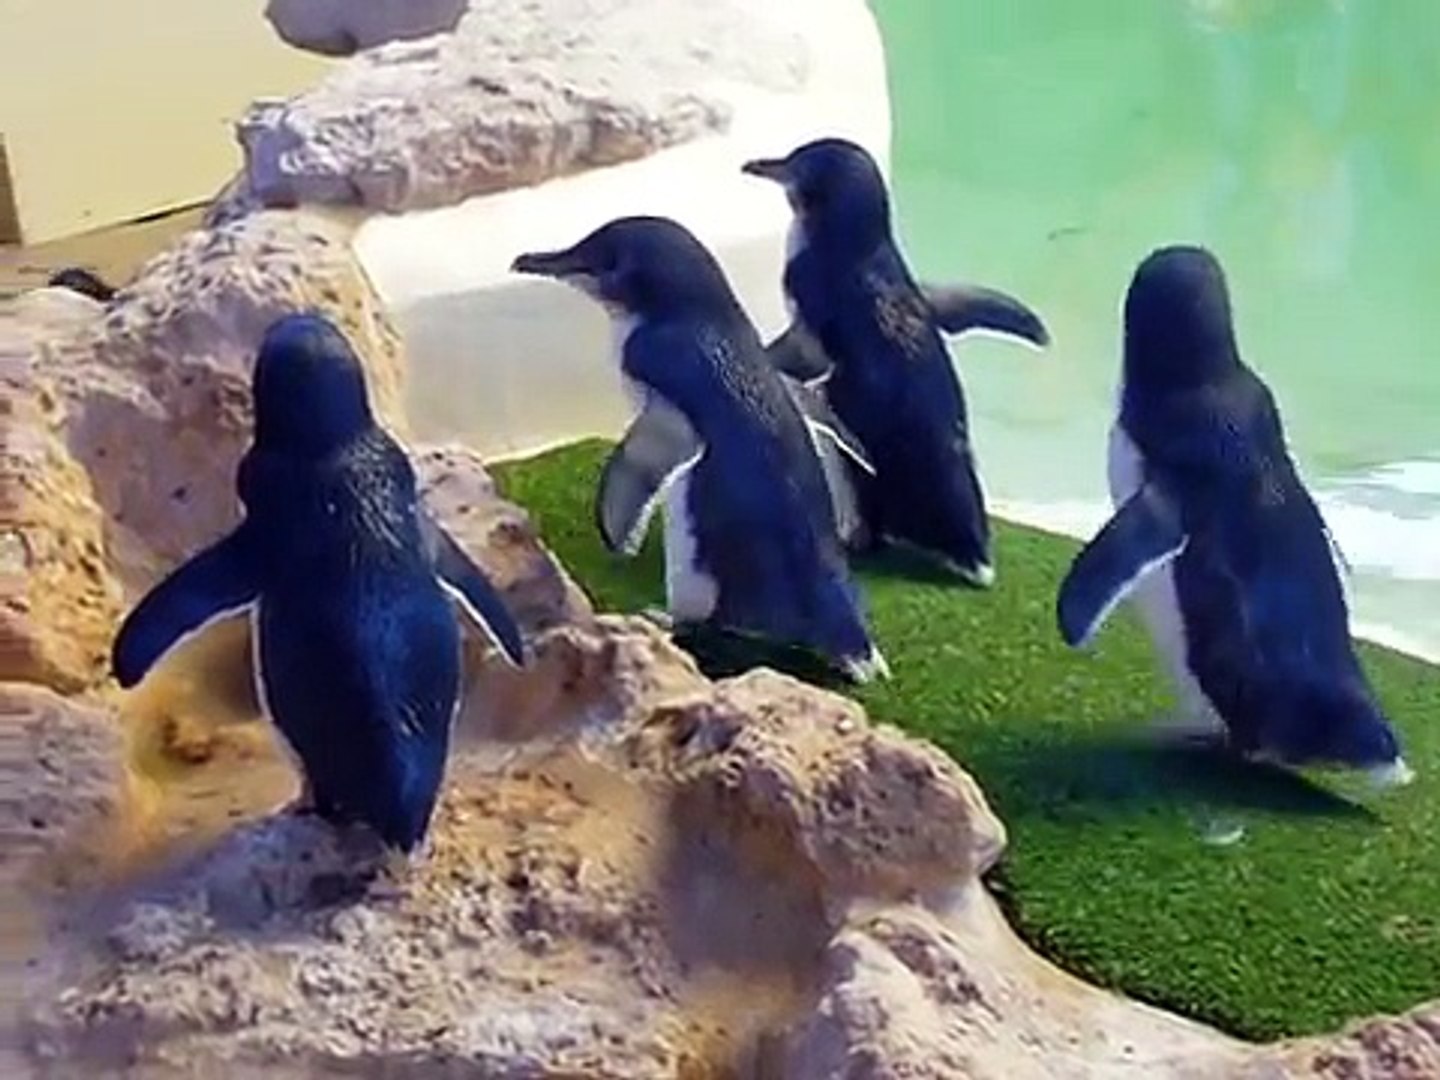 Little penguins on Penguin Island, Australia